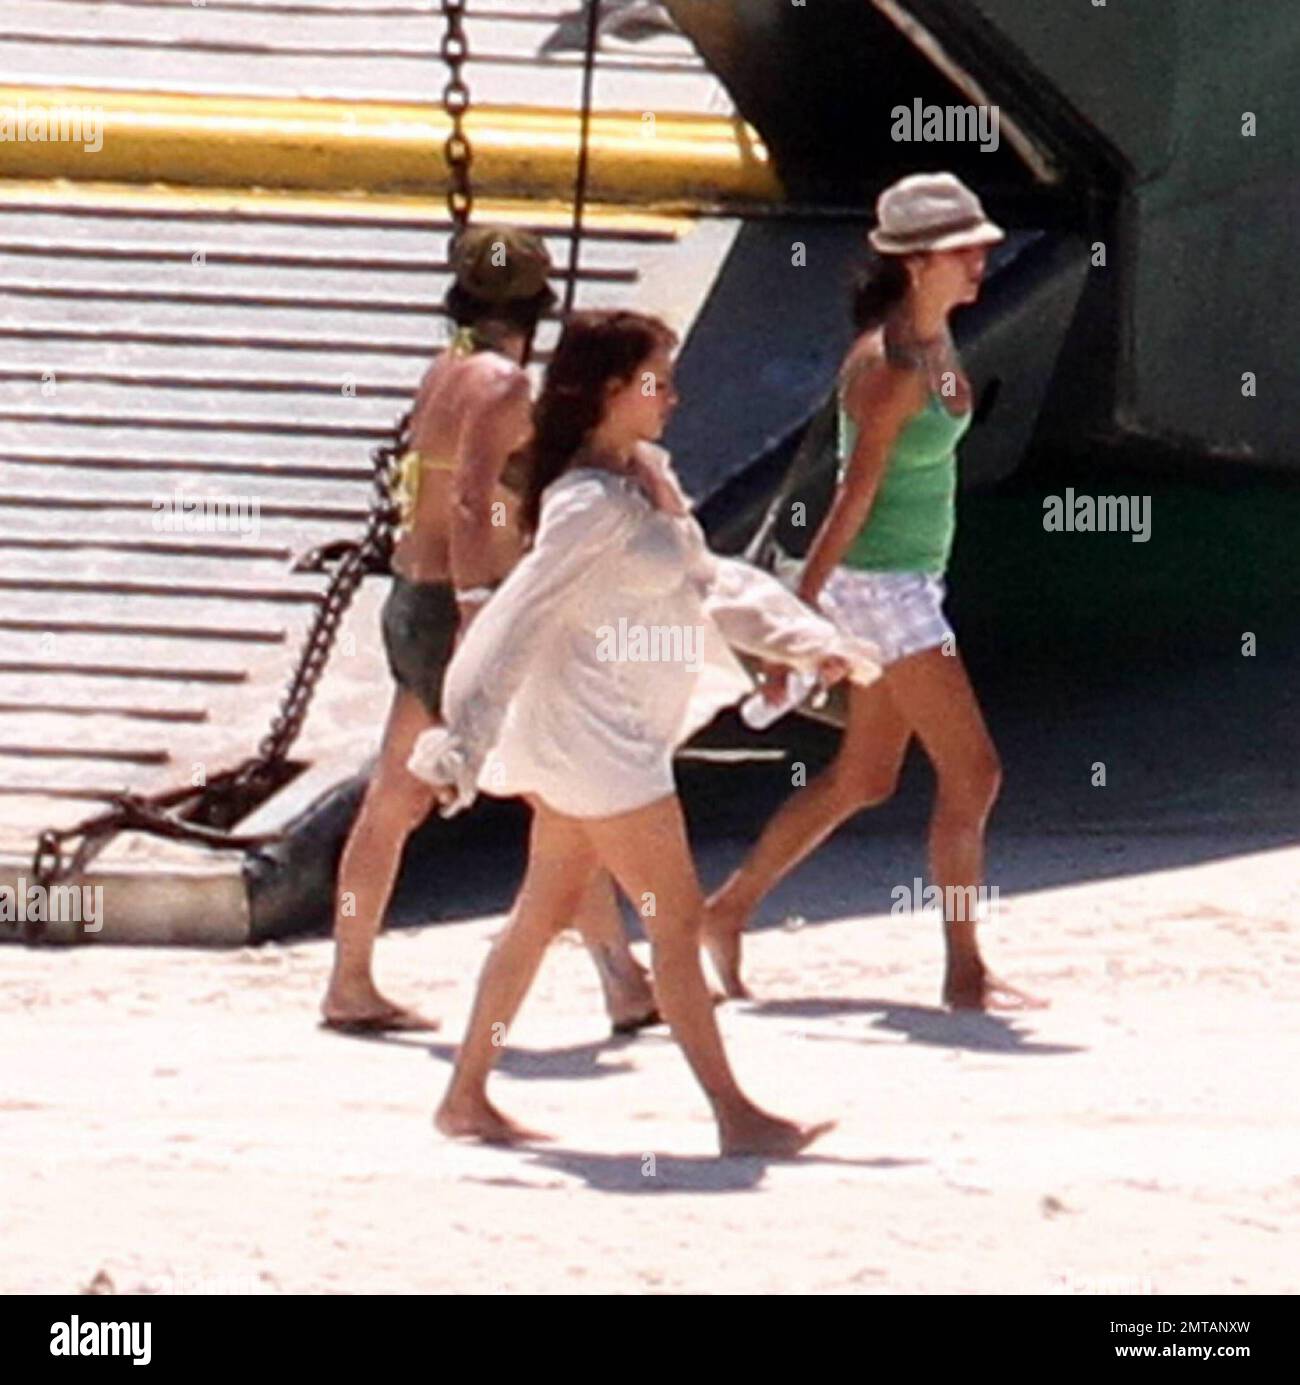 EXCLUSIF !! Penelope Cruz est vue pieds nus sur une île déserte plage  pendant le tournage de la prochaine suite Disney "Pirates des Caraïbes: On  Stranger Tides". La figure de l'actrice espagnole